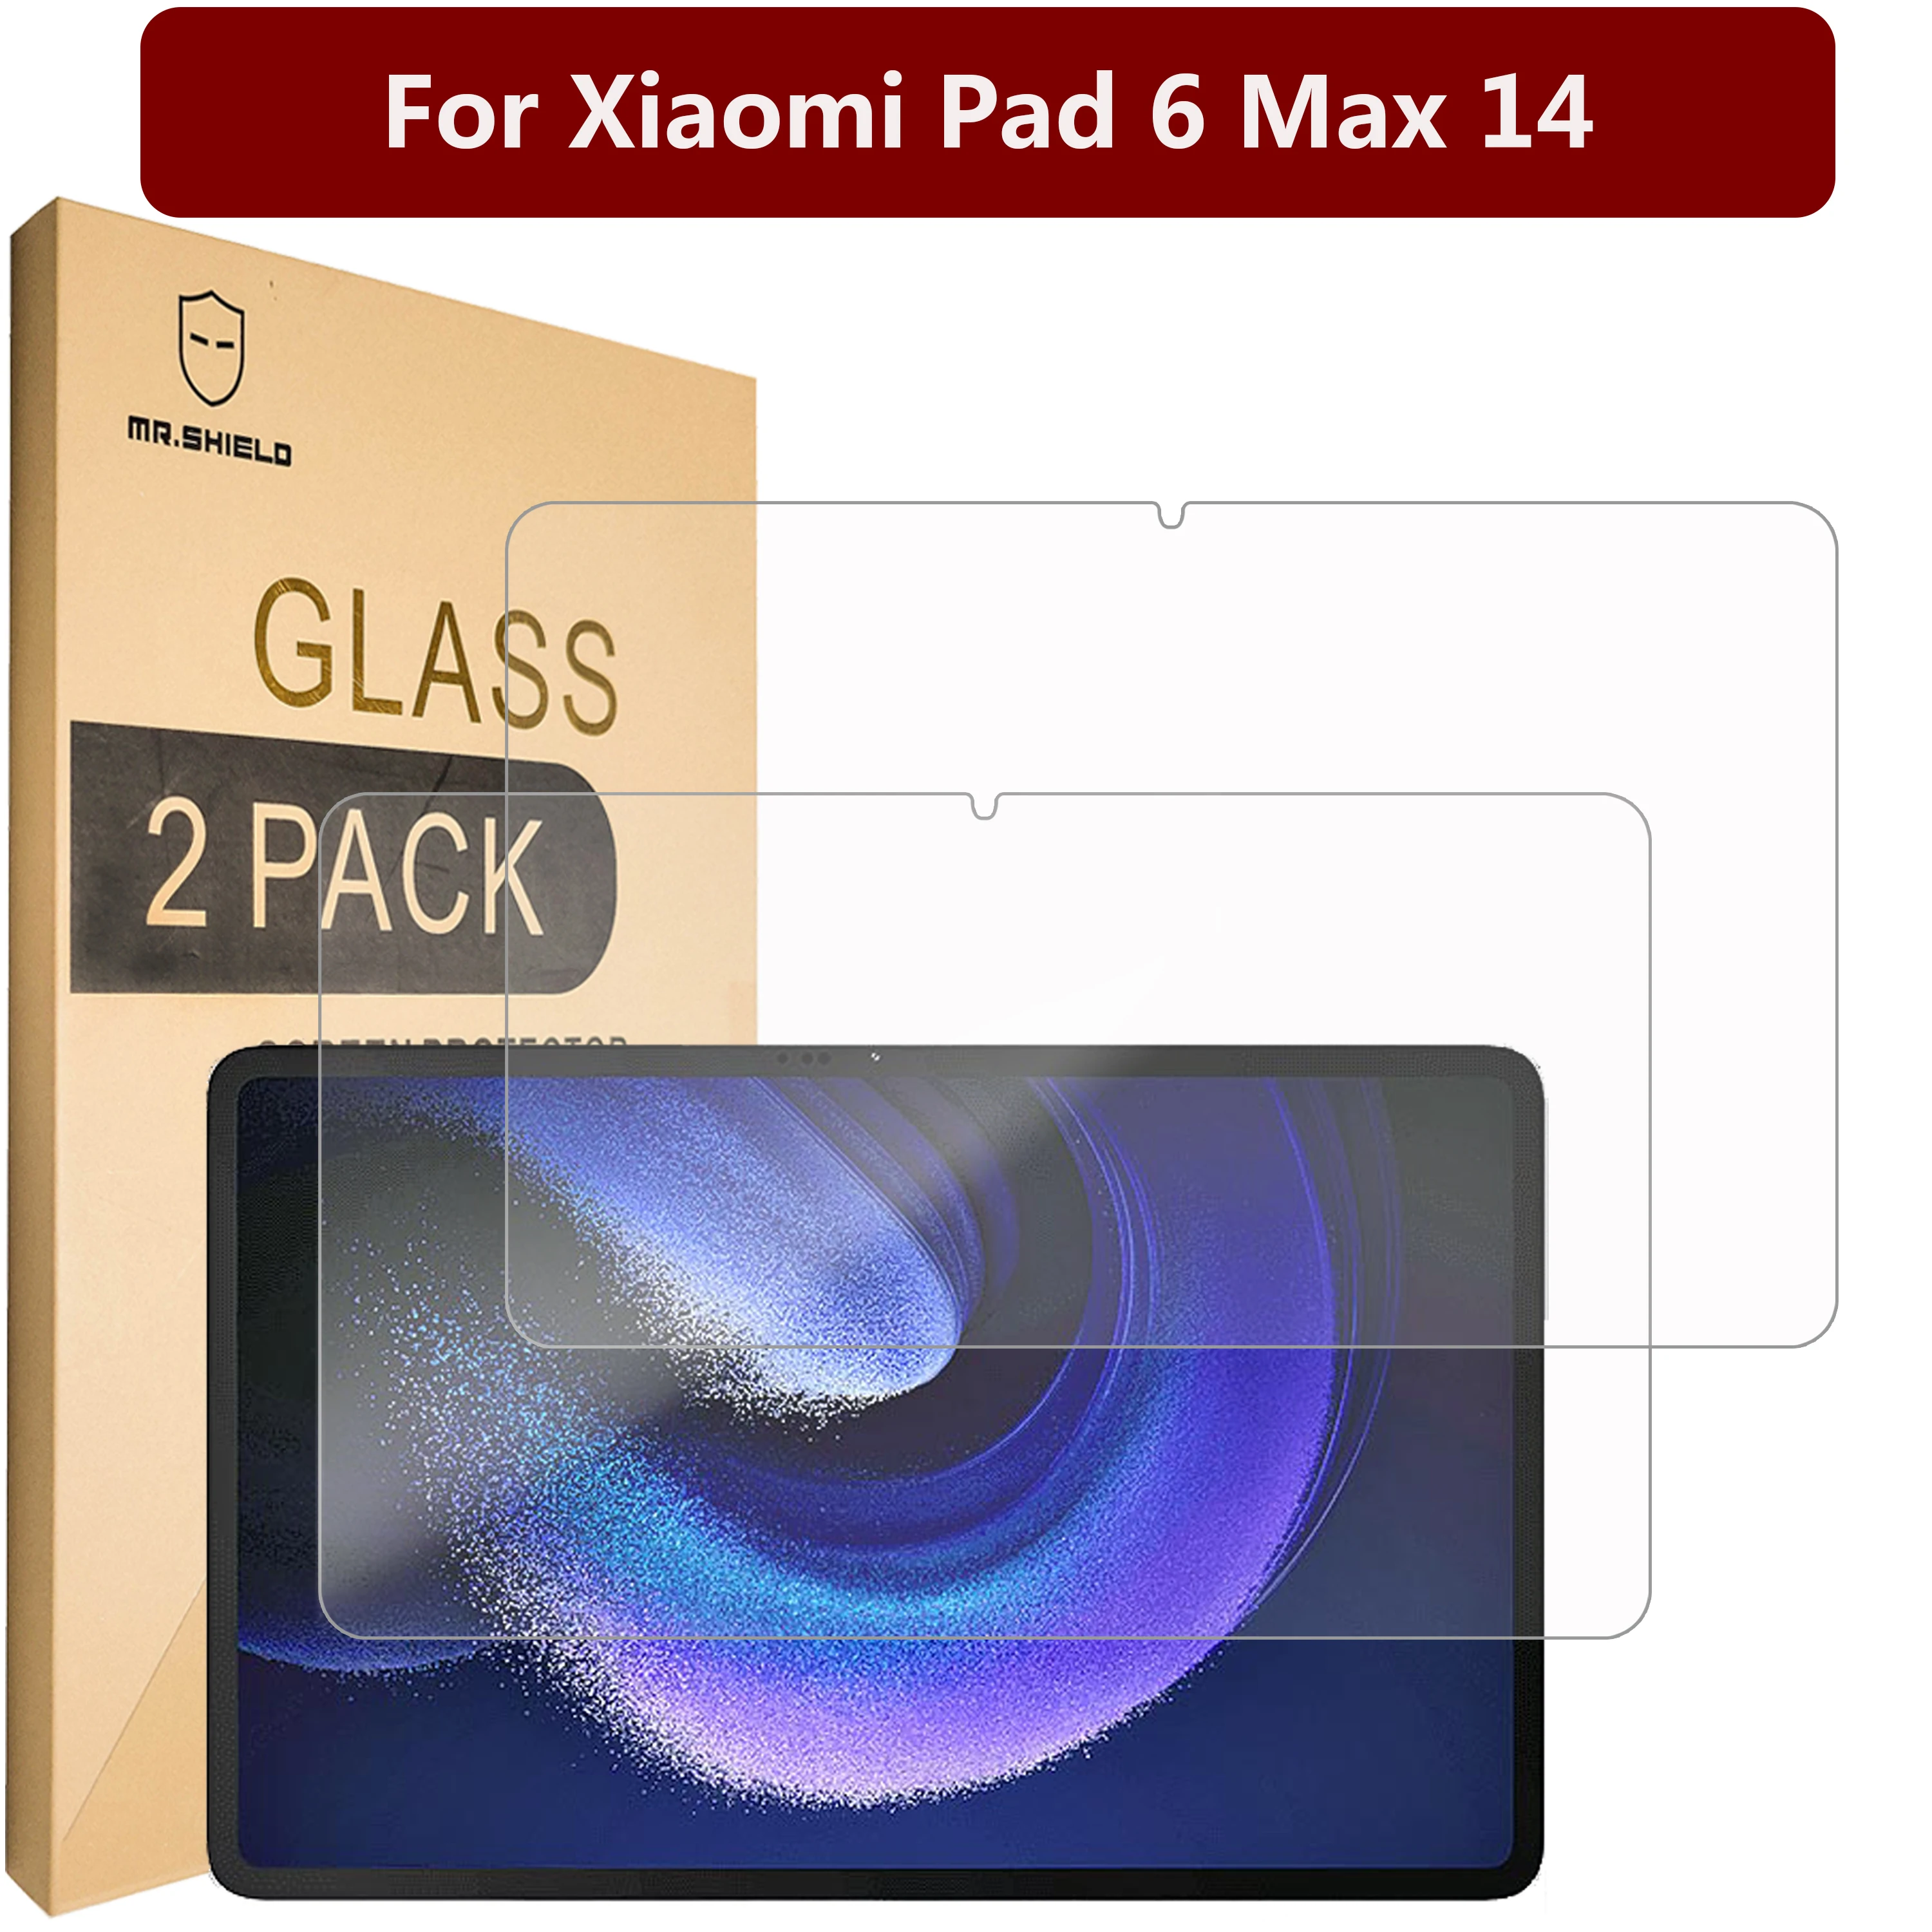 Защитная пленка Mr.Shield [в 2 упаковках] для Xiaomi Pad 6 Max 14 [закаленное стекло] [Японское стекло с твердостью 9H] Защитная пленка для экрана защитная пленка mr shield [в 3 упаковках] для экрана honor x8a [закаленное стекло] [японское стекло с твердостью 9h] защитная пленка для экрана